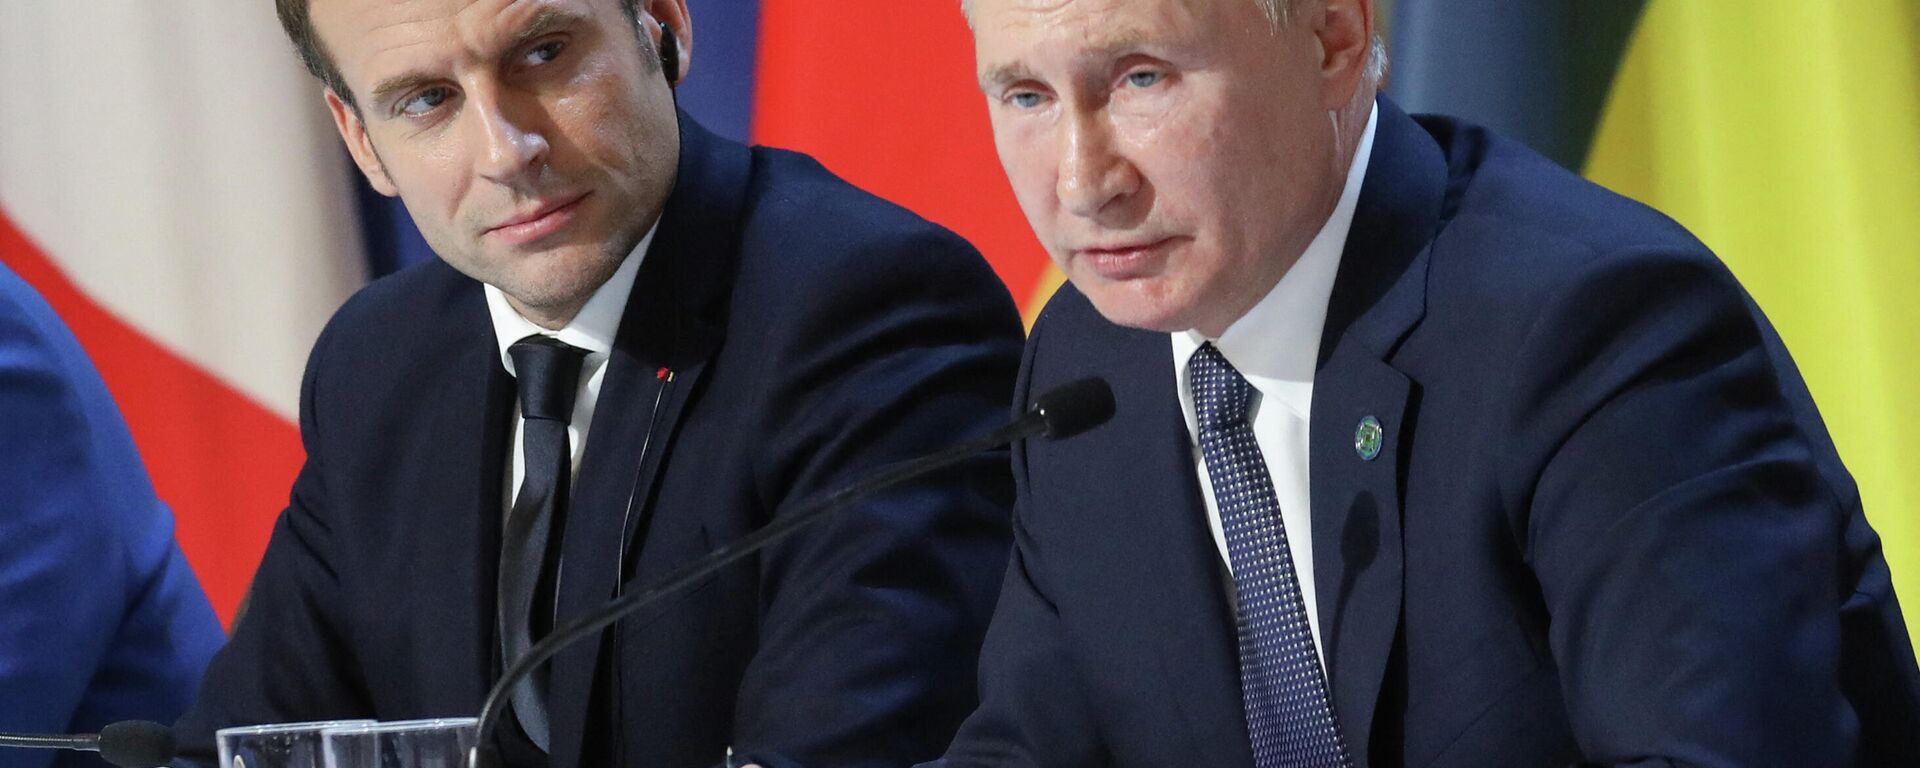 Президент Франции Эммануэль Макрон и российский лидер Владимир Путин - Sputnik Узбекистан, 1920, 02.04.2021